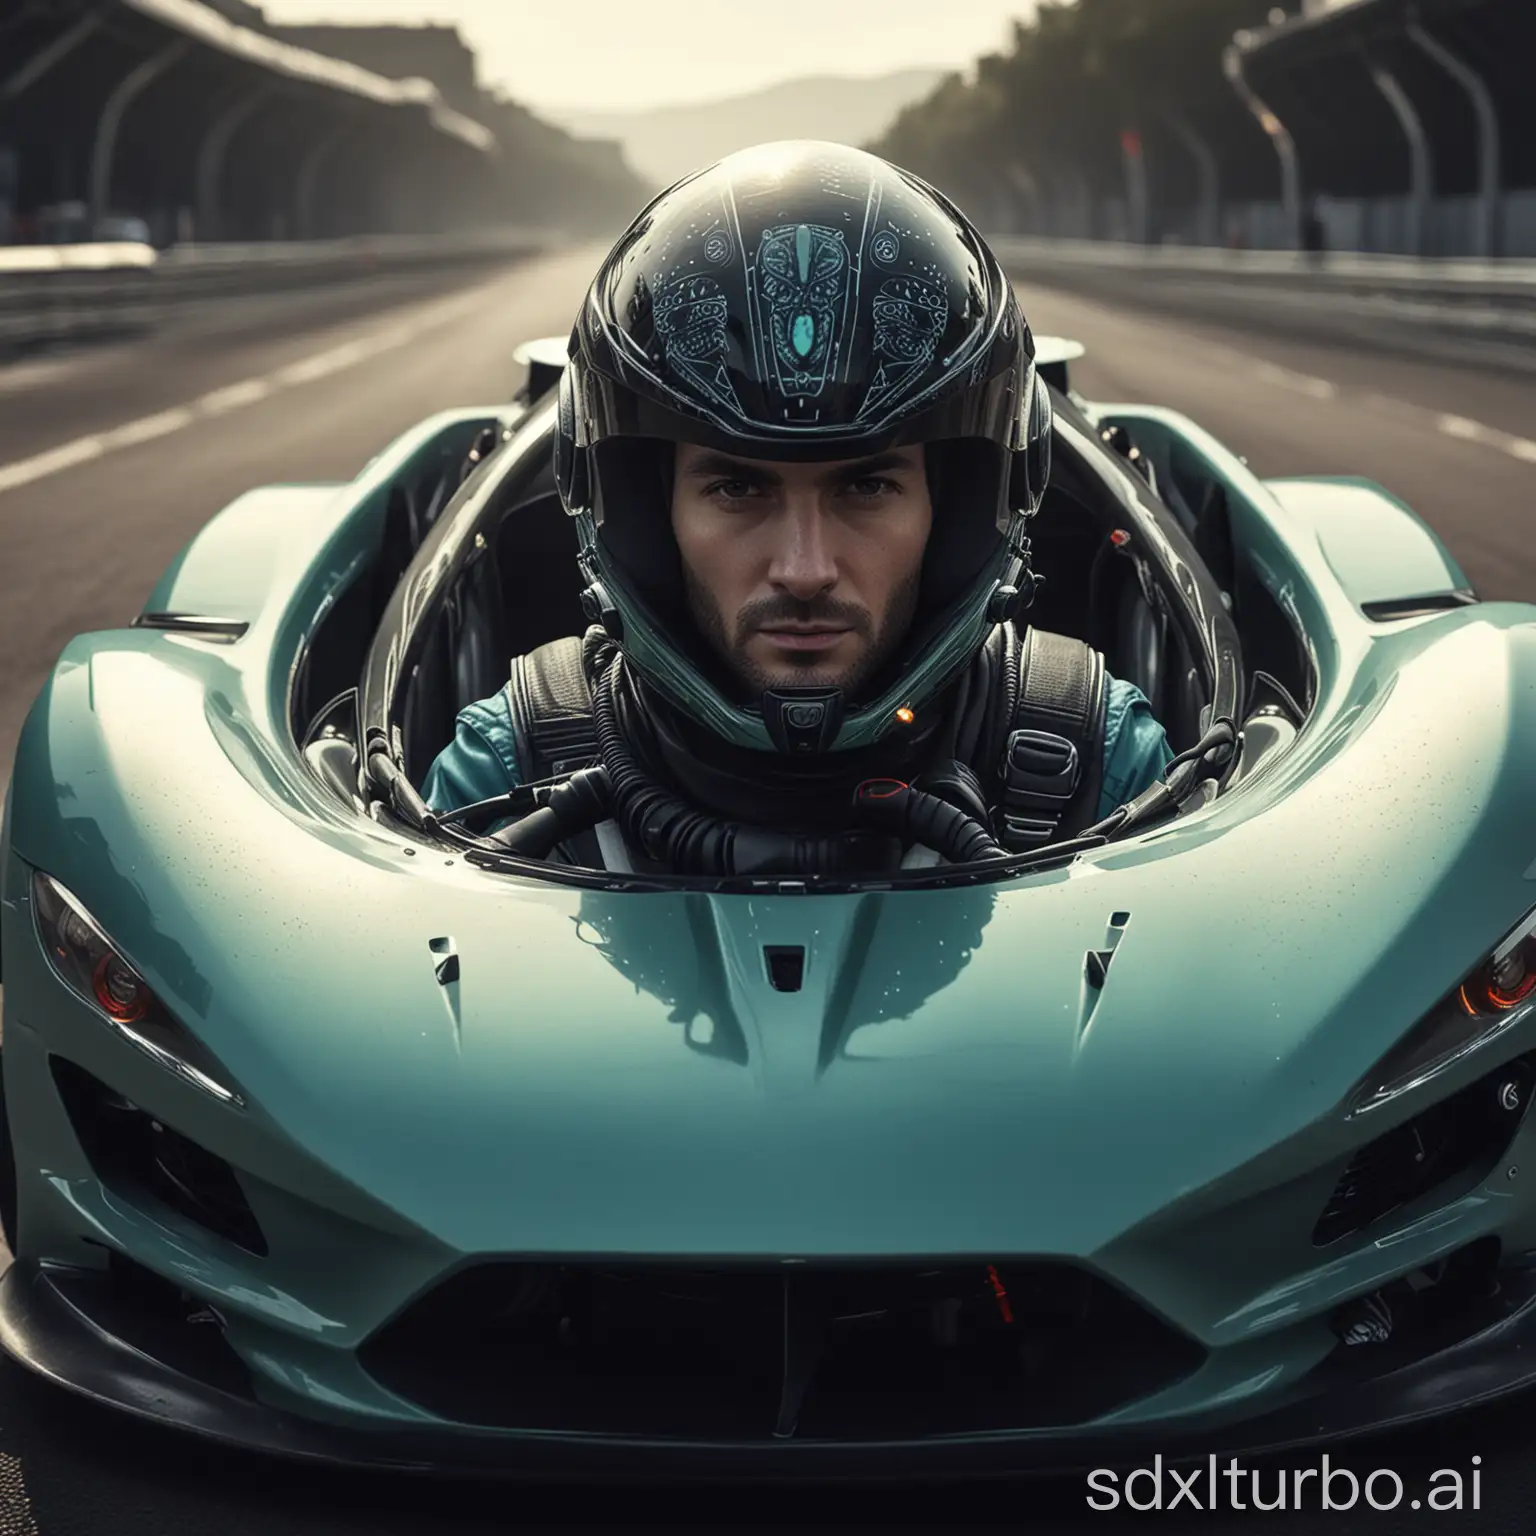 Rennfahrer mit Alienhelm in einem futuristischen GT Rennwagen
